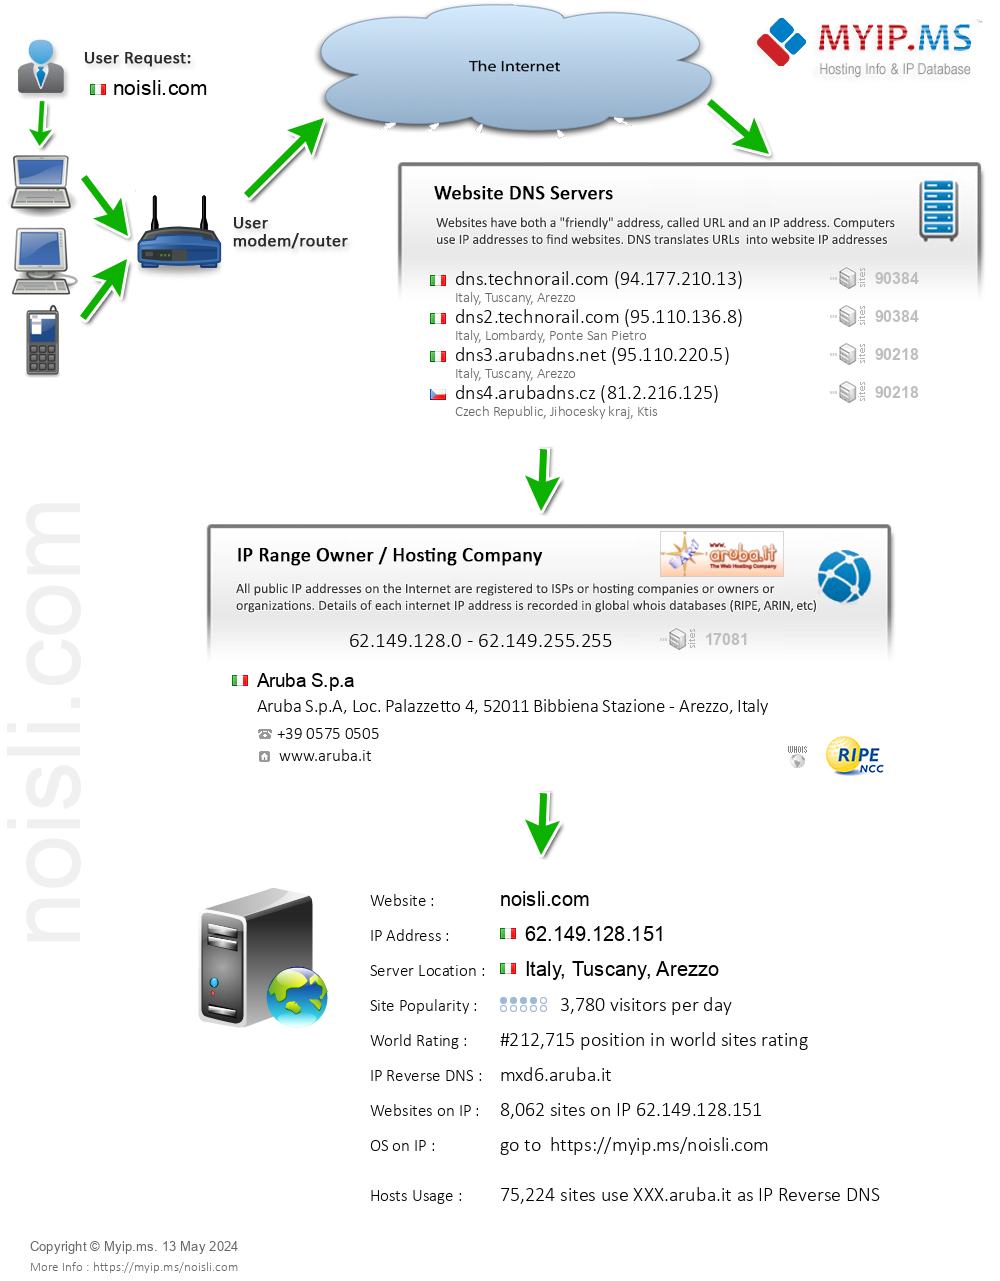 Noisli.com - Website Hosting Visual IP Diagram